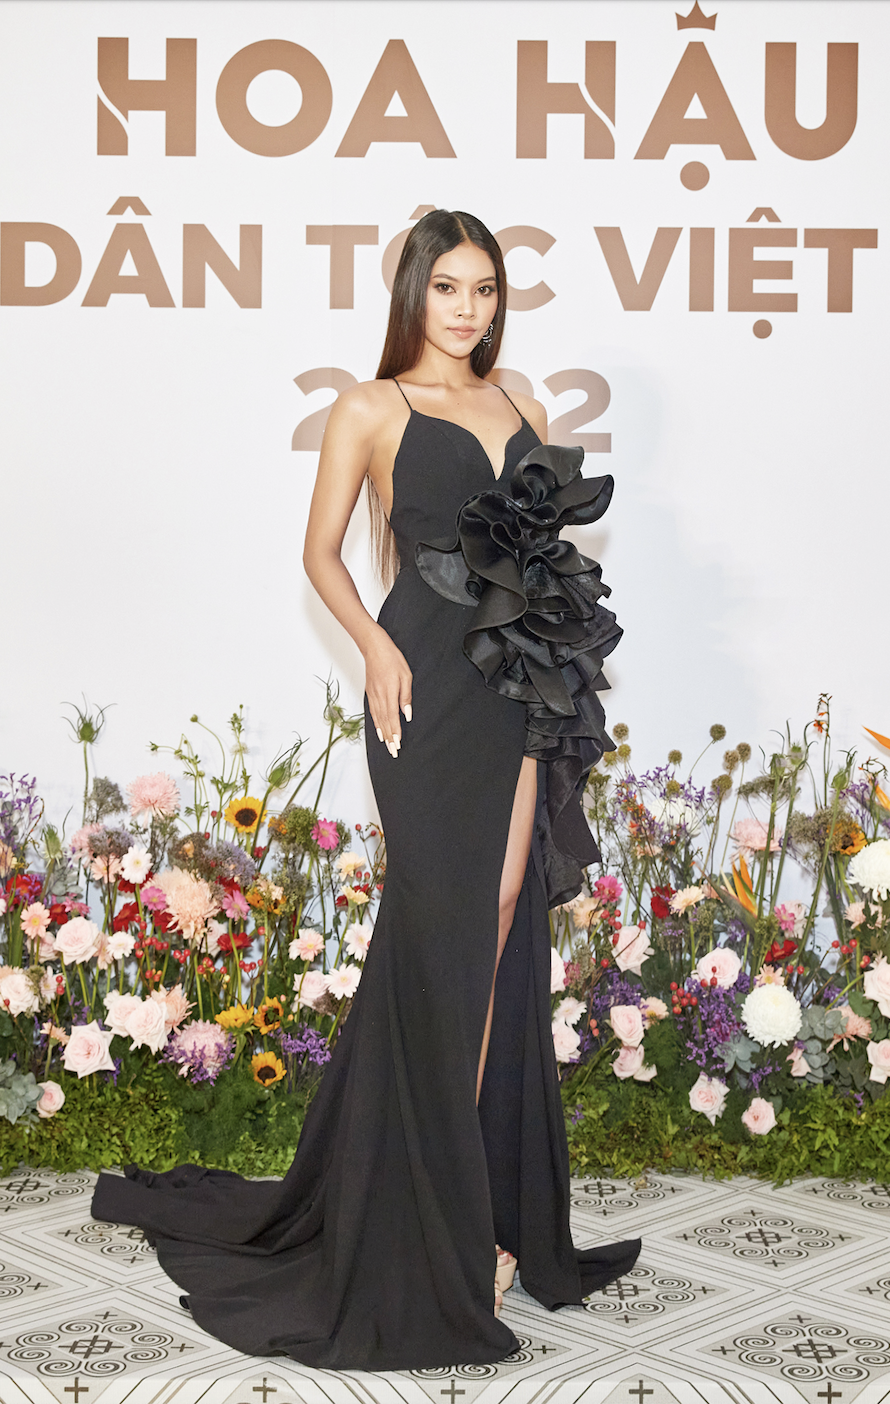 Loạt chiến binh mạnh trong top 30 Hoa hậu các dân tộc Việt Nam khu vực phía Nam: Nhan sắc và học vấn gây bất ngờ - Ảnh 6.